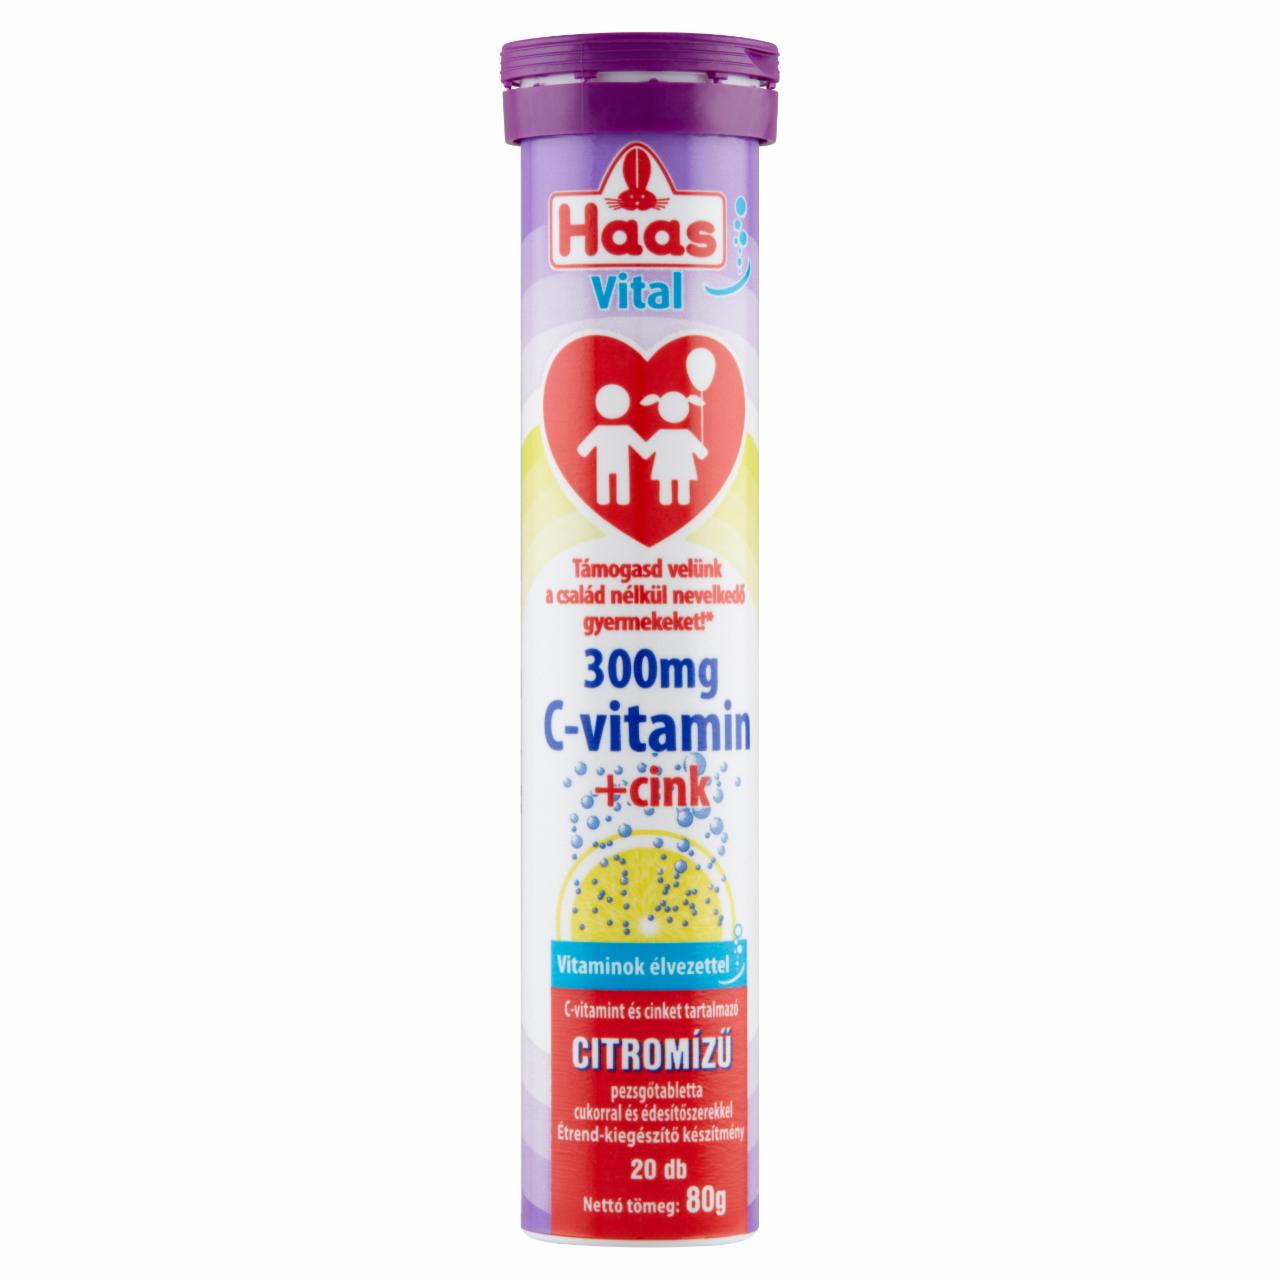 Képek - Haas Vital 300 mg C-vitamin citromízű pezsgőtabletta cukorral és édesítőszerekkel 20 db 80 g